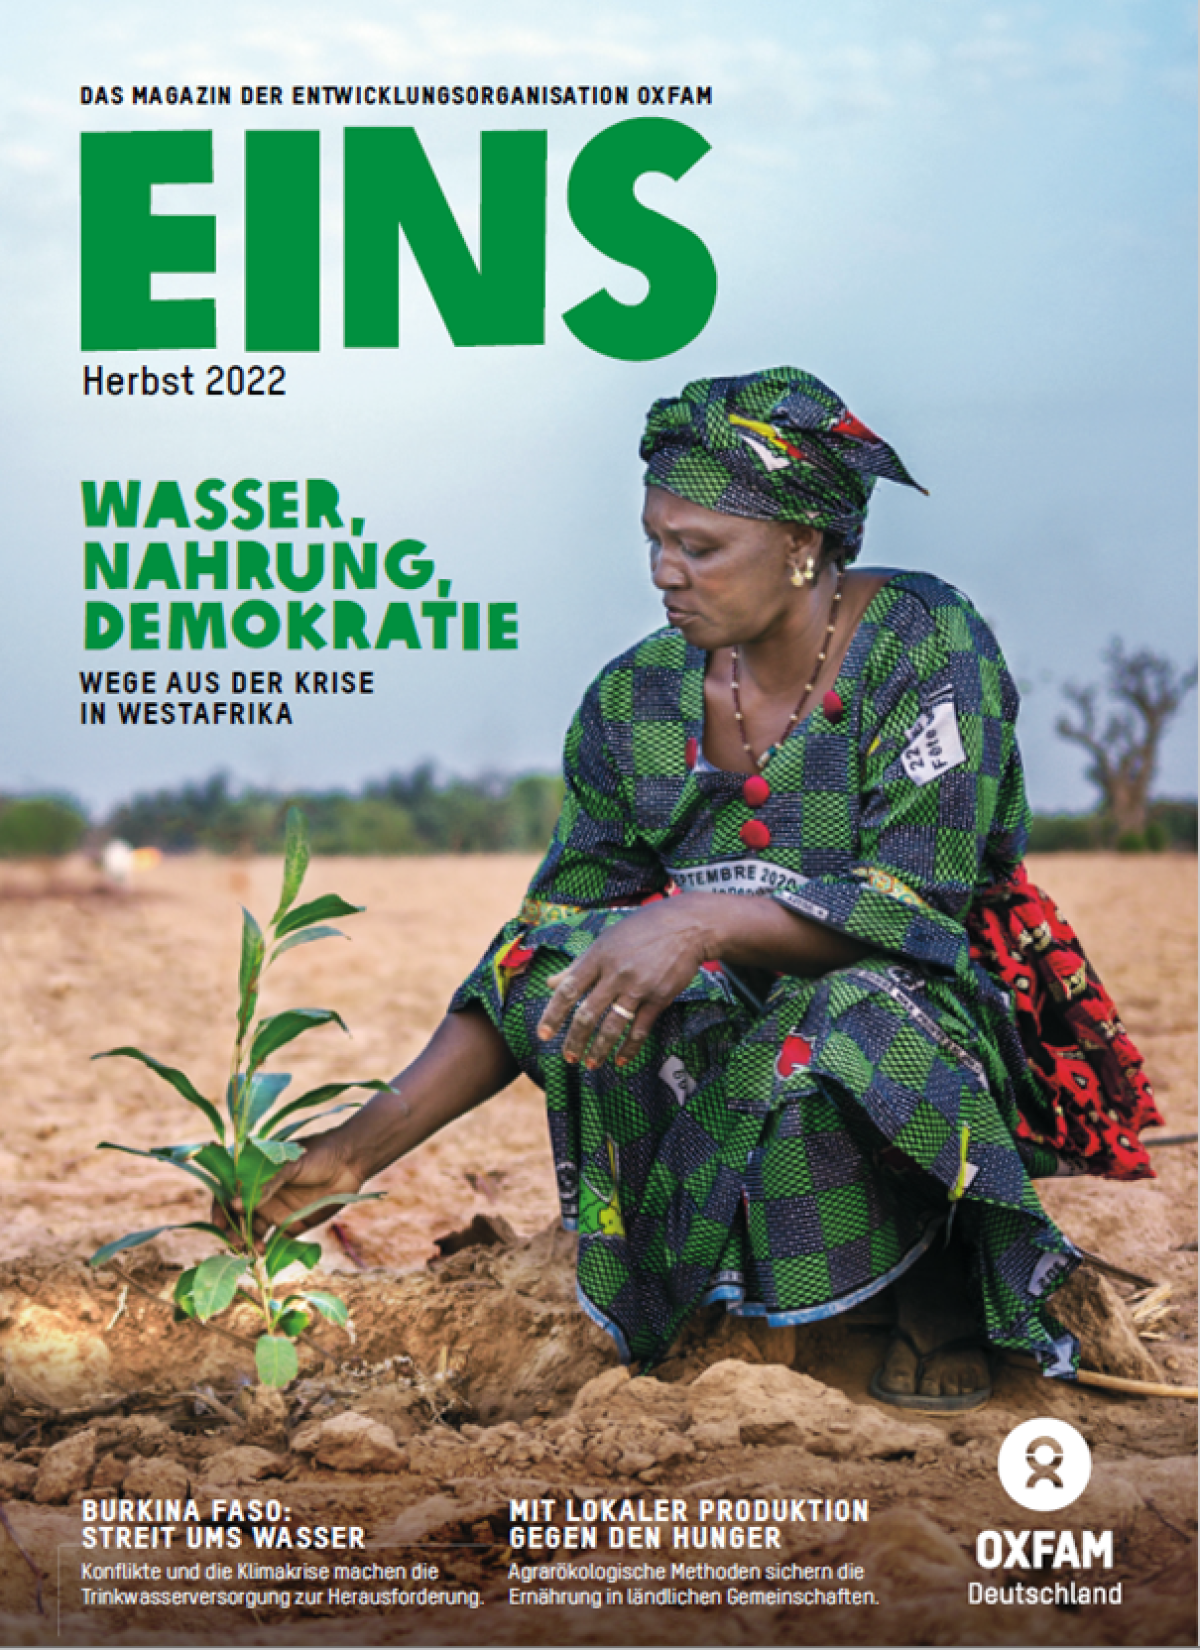 Titelbild der EINS-Herbstausgabe 2022 mit dem Titel "Wasser, Nahrung, Demokratie - Wege aus der Krise in Westafrika": Eine Frau (in grün gekleidet) hockt neben einerm Sprössling. Um sie herum ist weitflächig vertrockneter Boden zu sehen.